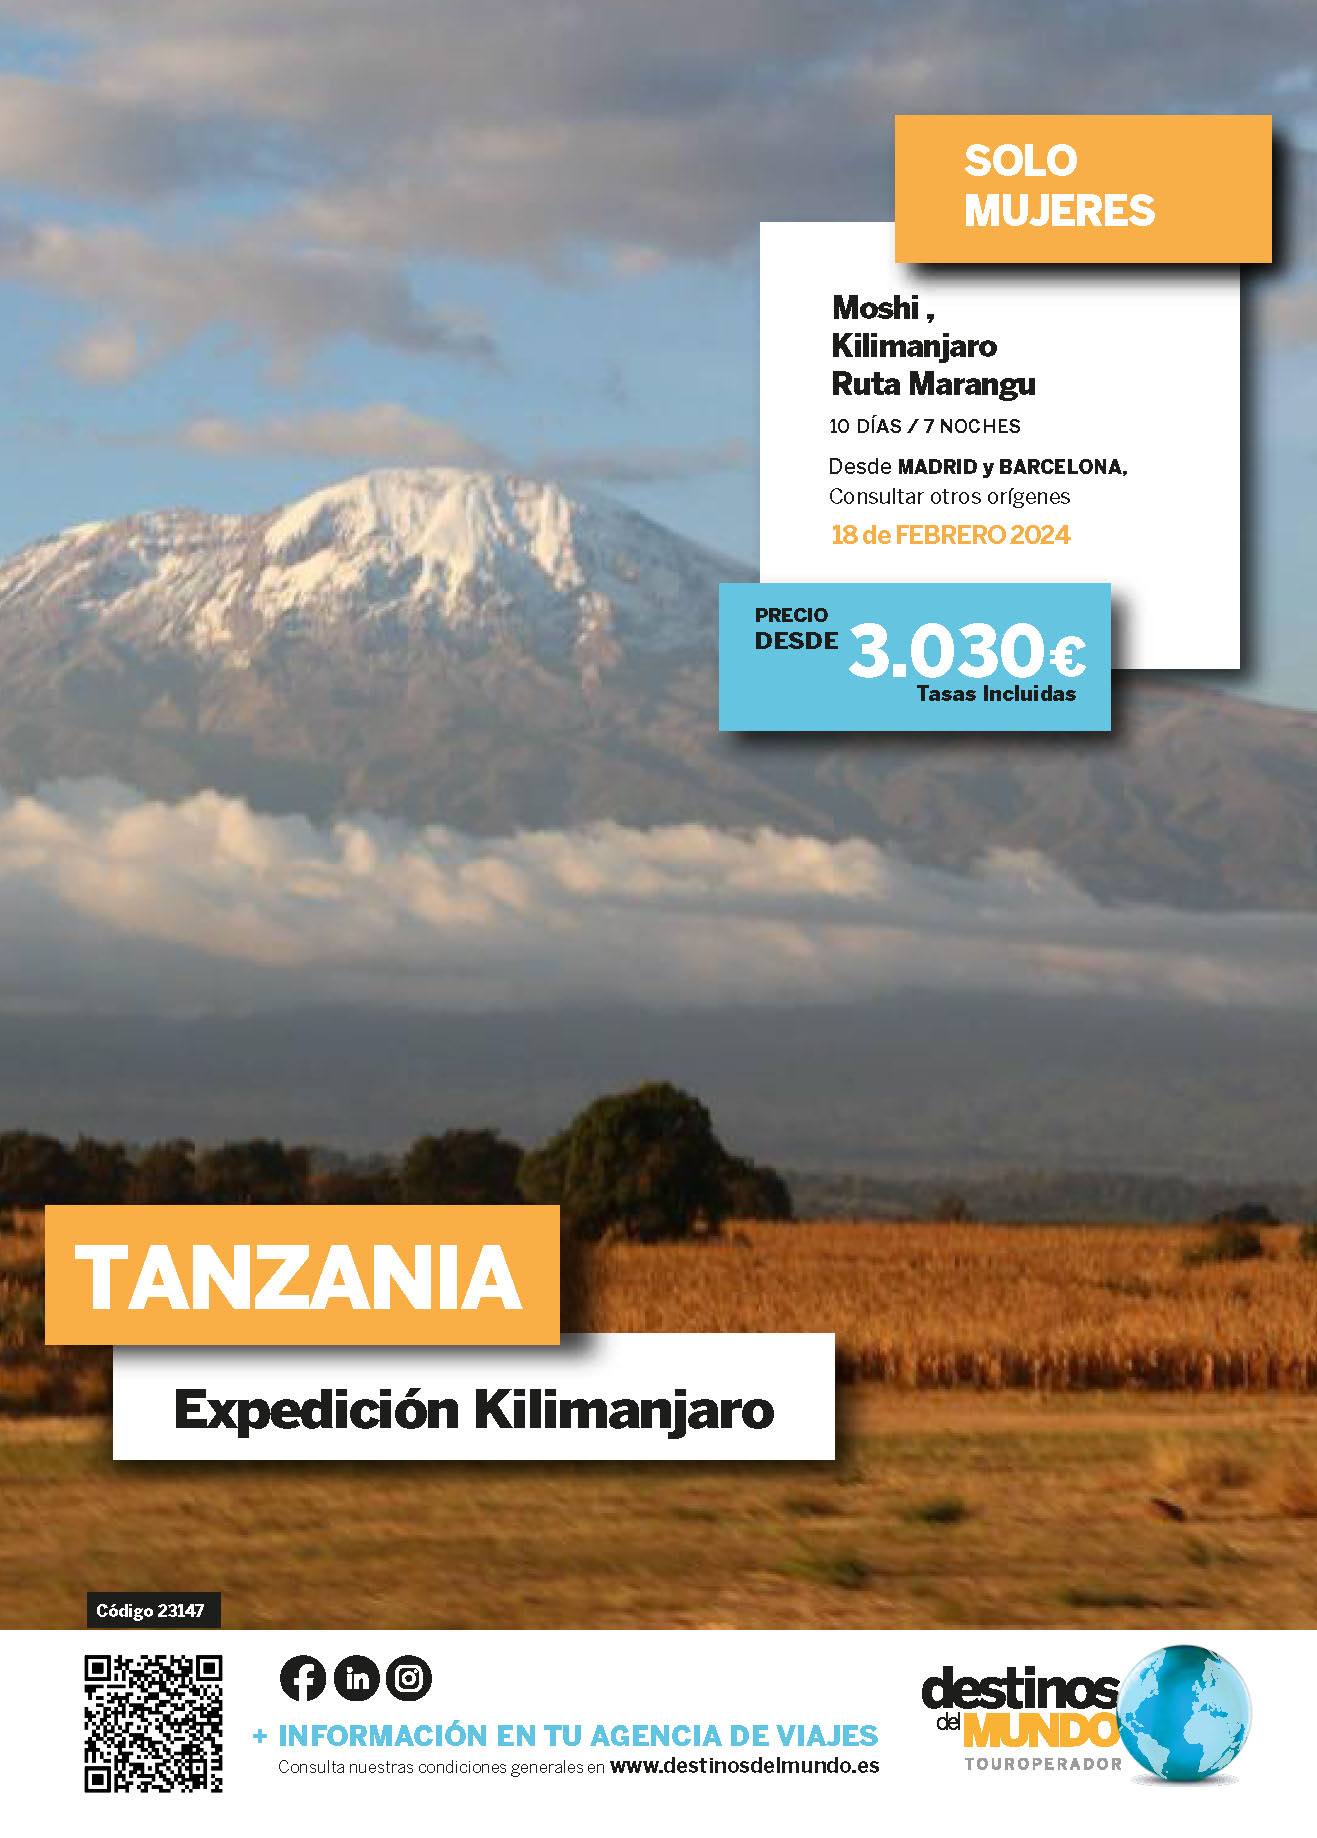 Oferta Destinos del Mundo Tanzania Expedicion Kilimanjaro Ruta Marangu solo mujeres 10 dias cupos Febrero 2024 salidas desde Madrid y Barcelona